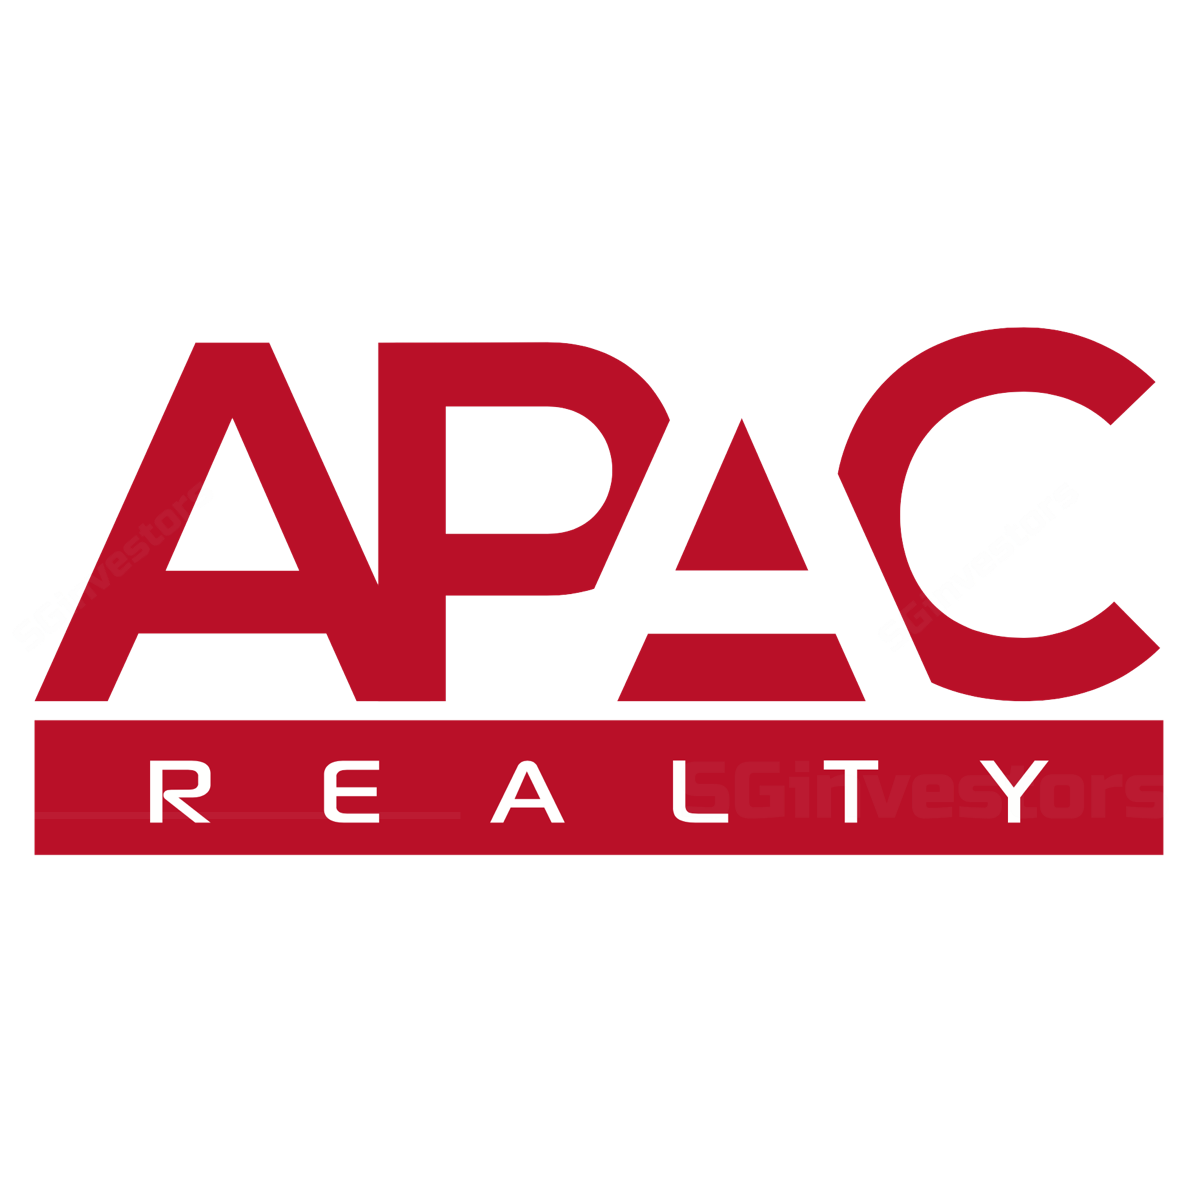 DBS: APAC Realty Ltd – Hold Target Price $0.67